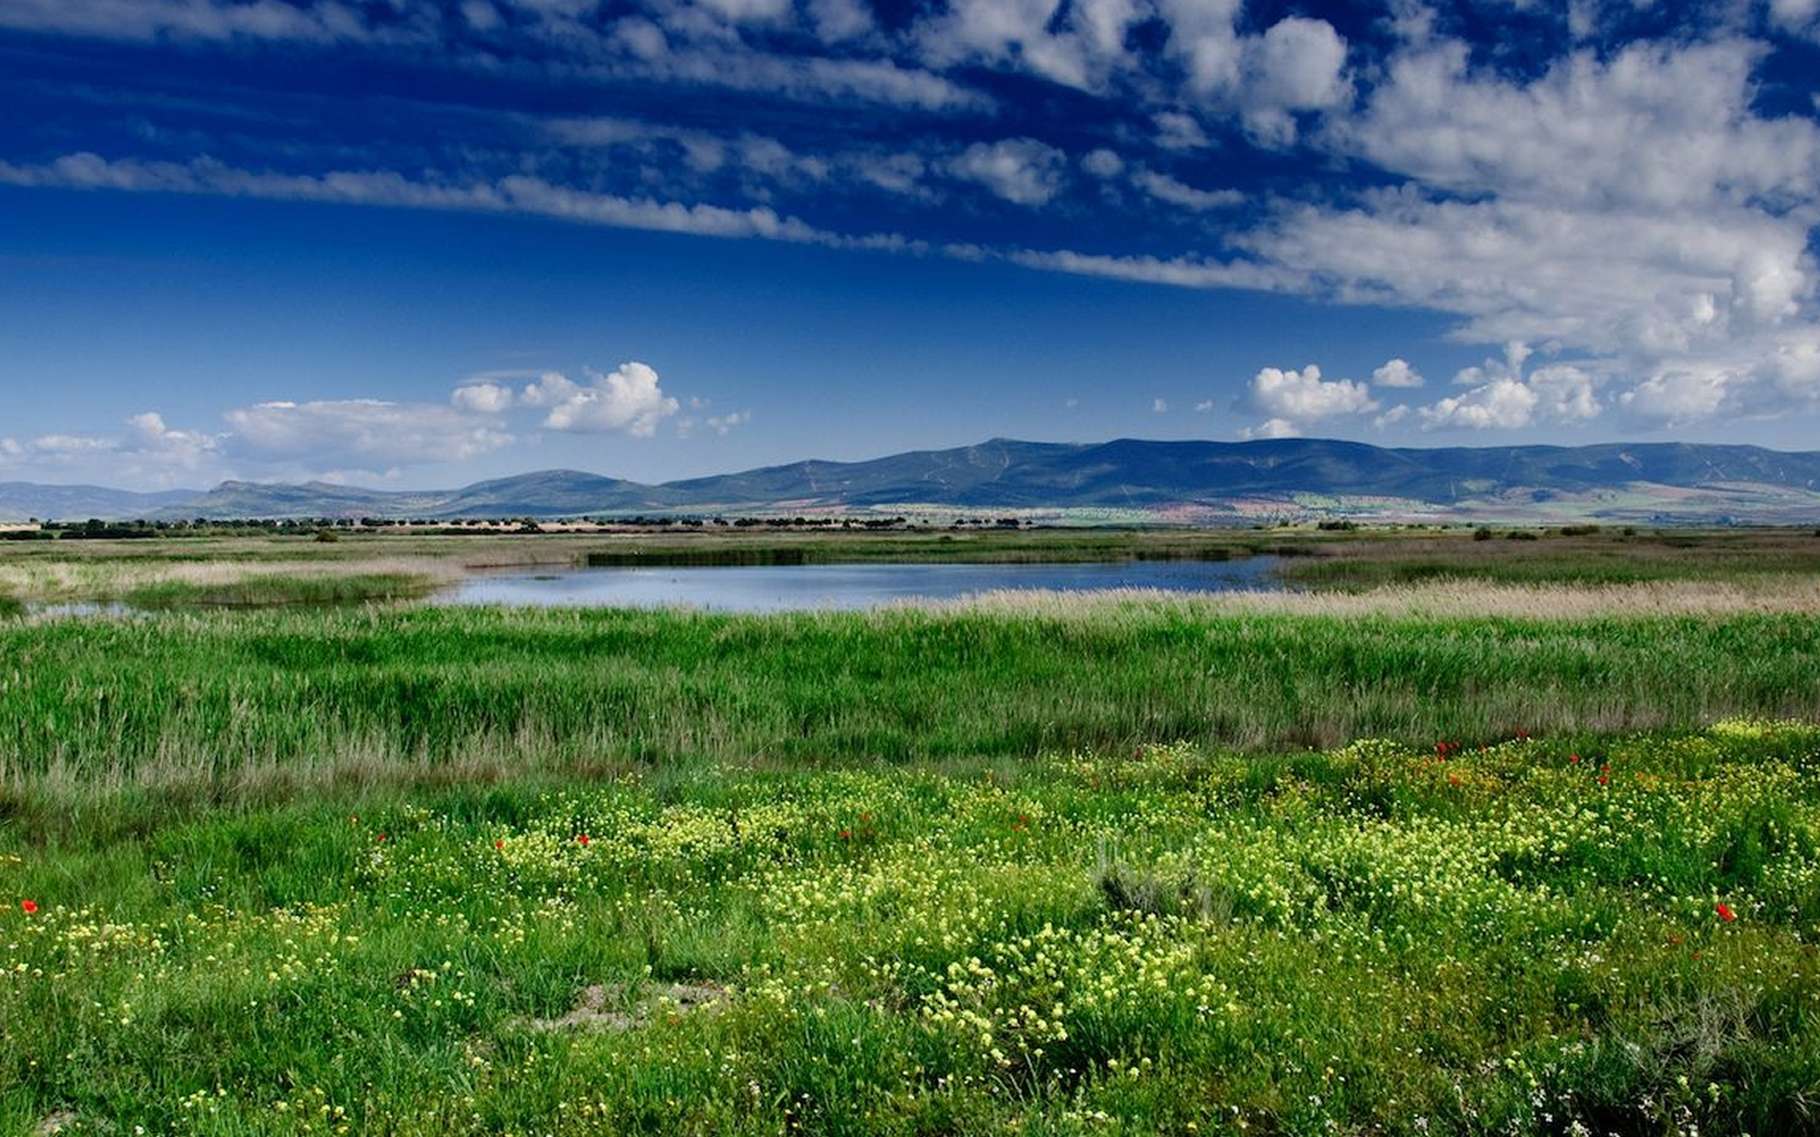 Les prairies font partie des biomes qui souffriraient le plus des activités humaines. Ici, une prairie dans le Parc national des Tablas de Daimiel, en Espagne. © yannboix, Flickr, CC by 2.0